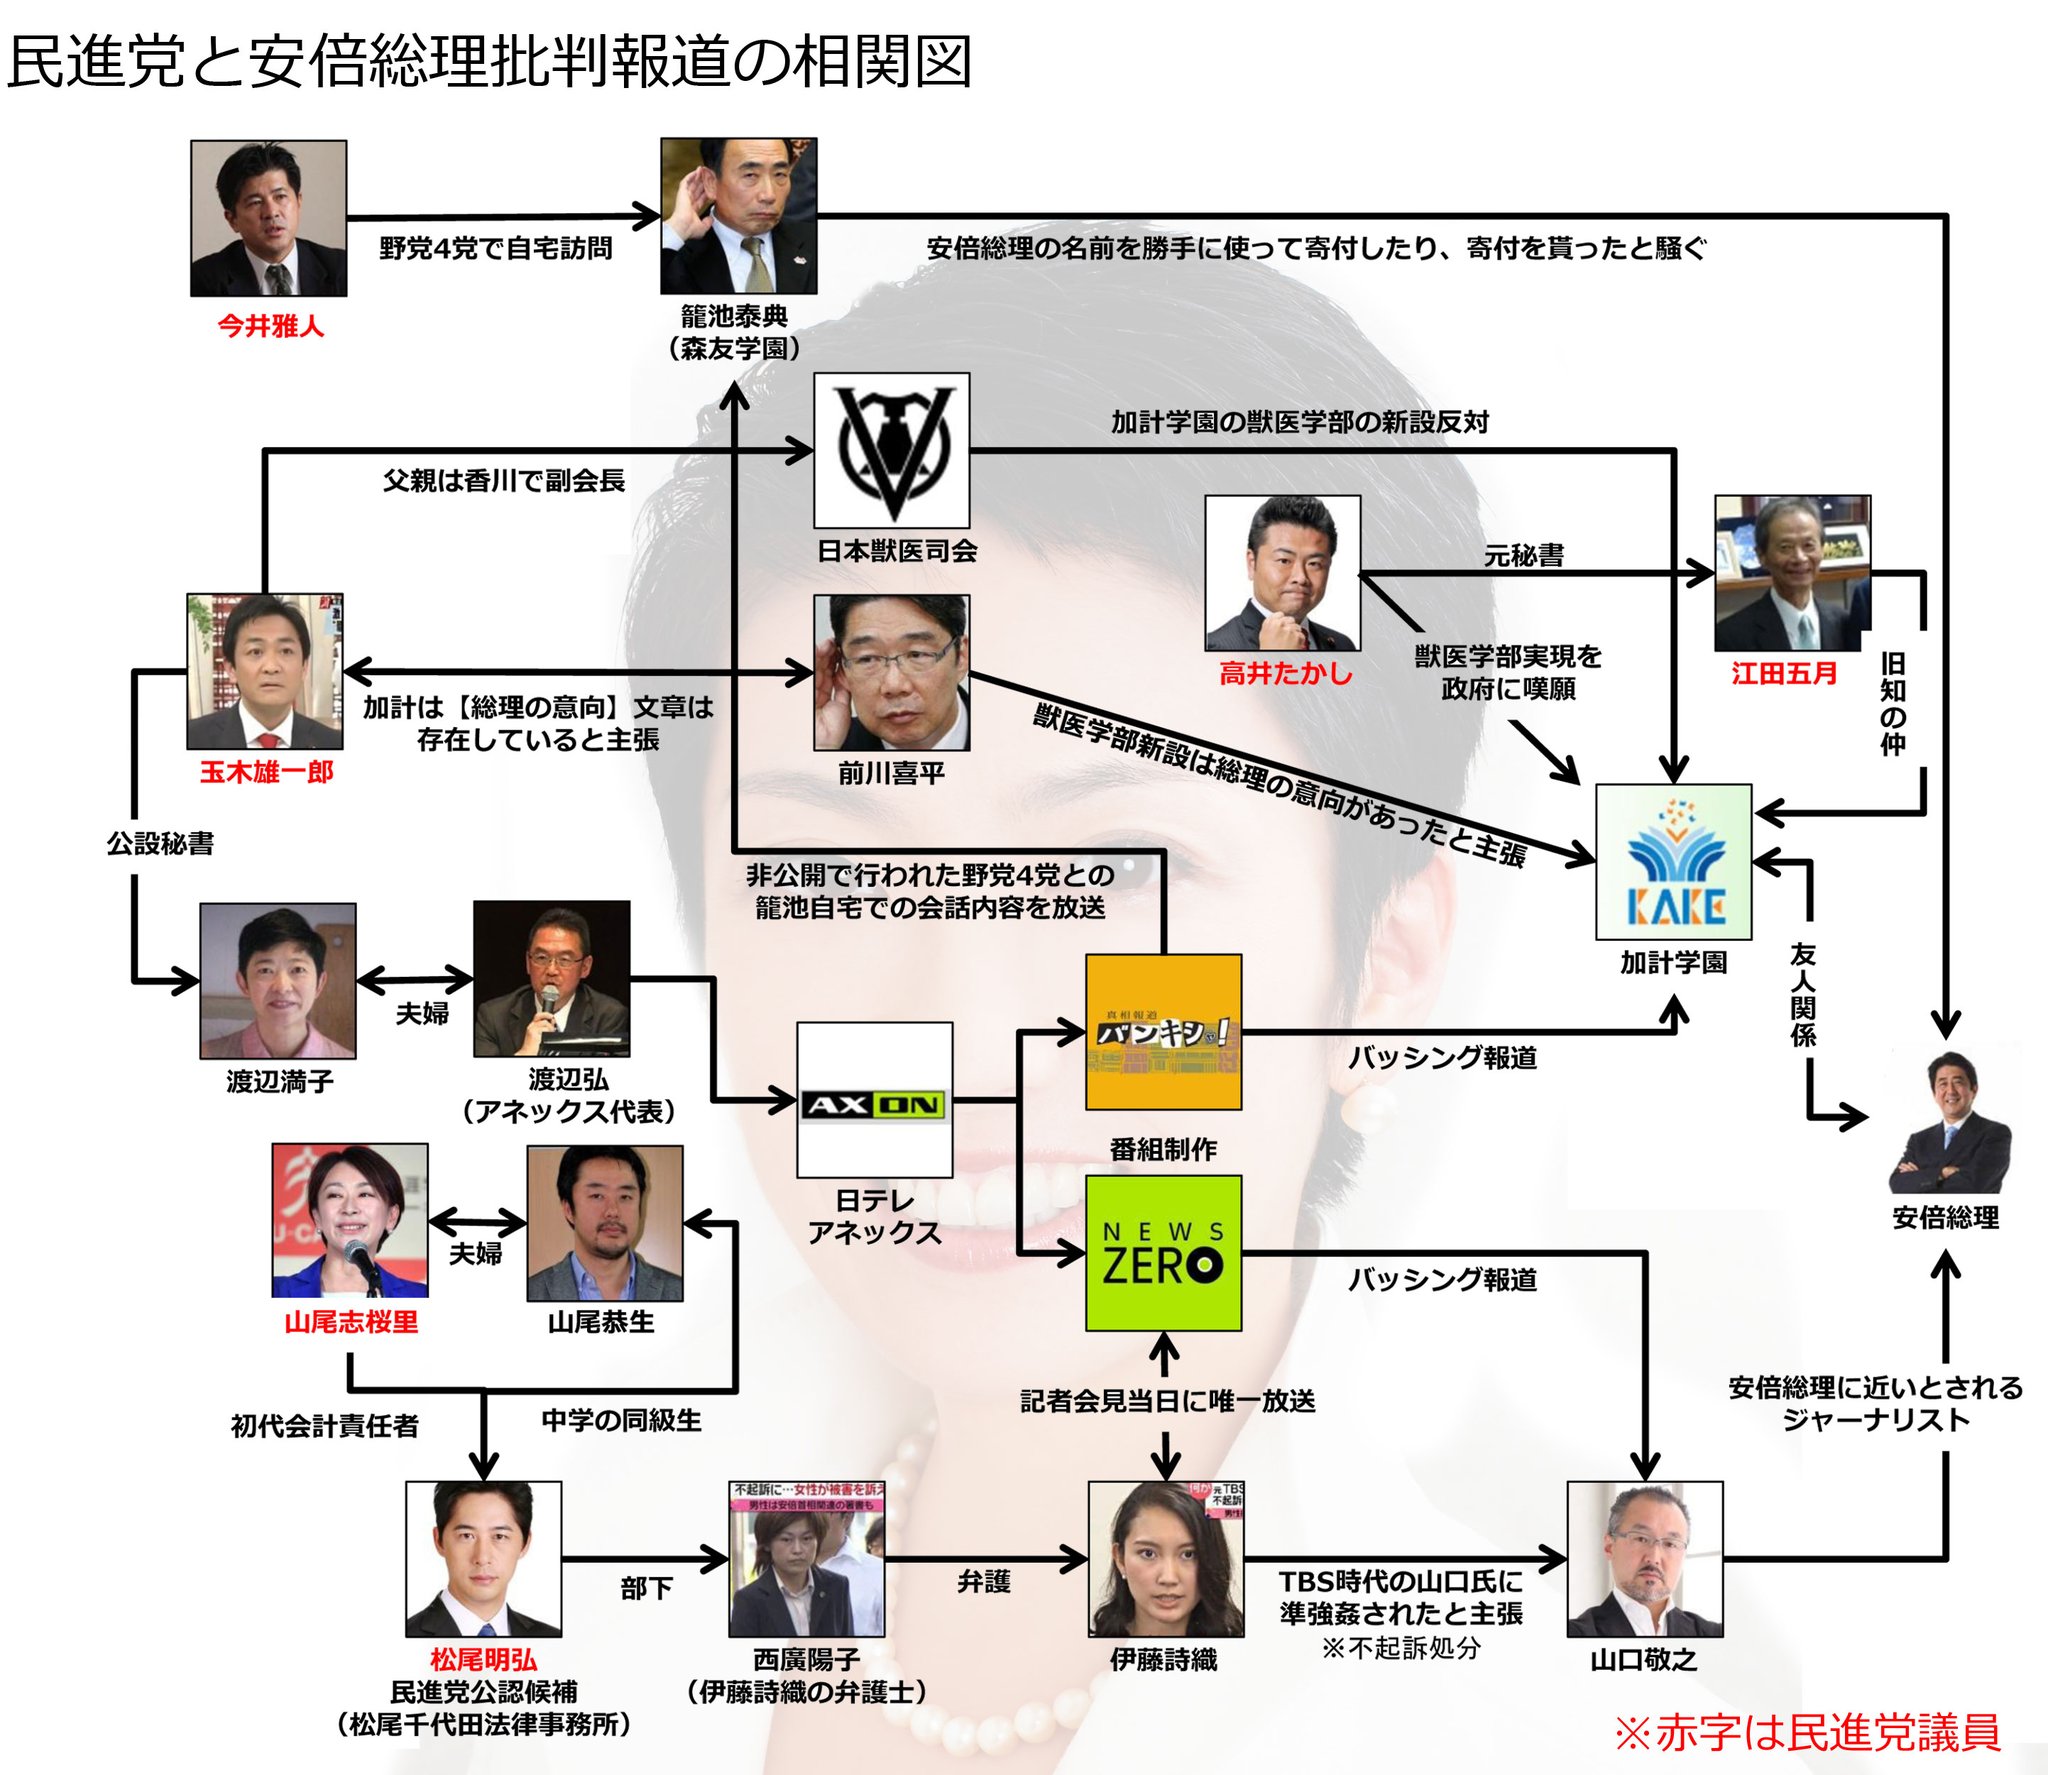 民進党と安倍総理批判報道の相関図